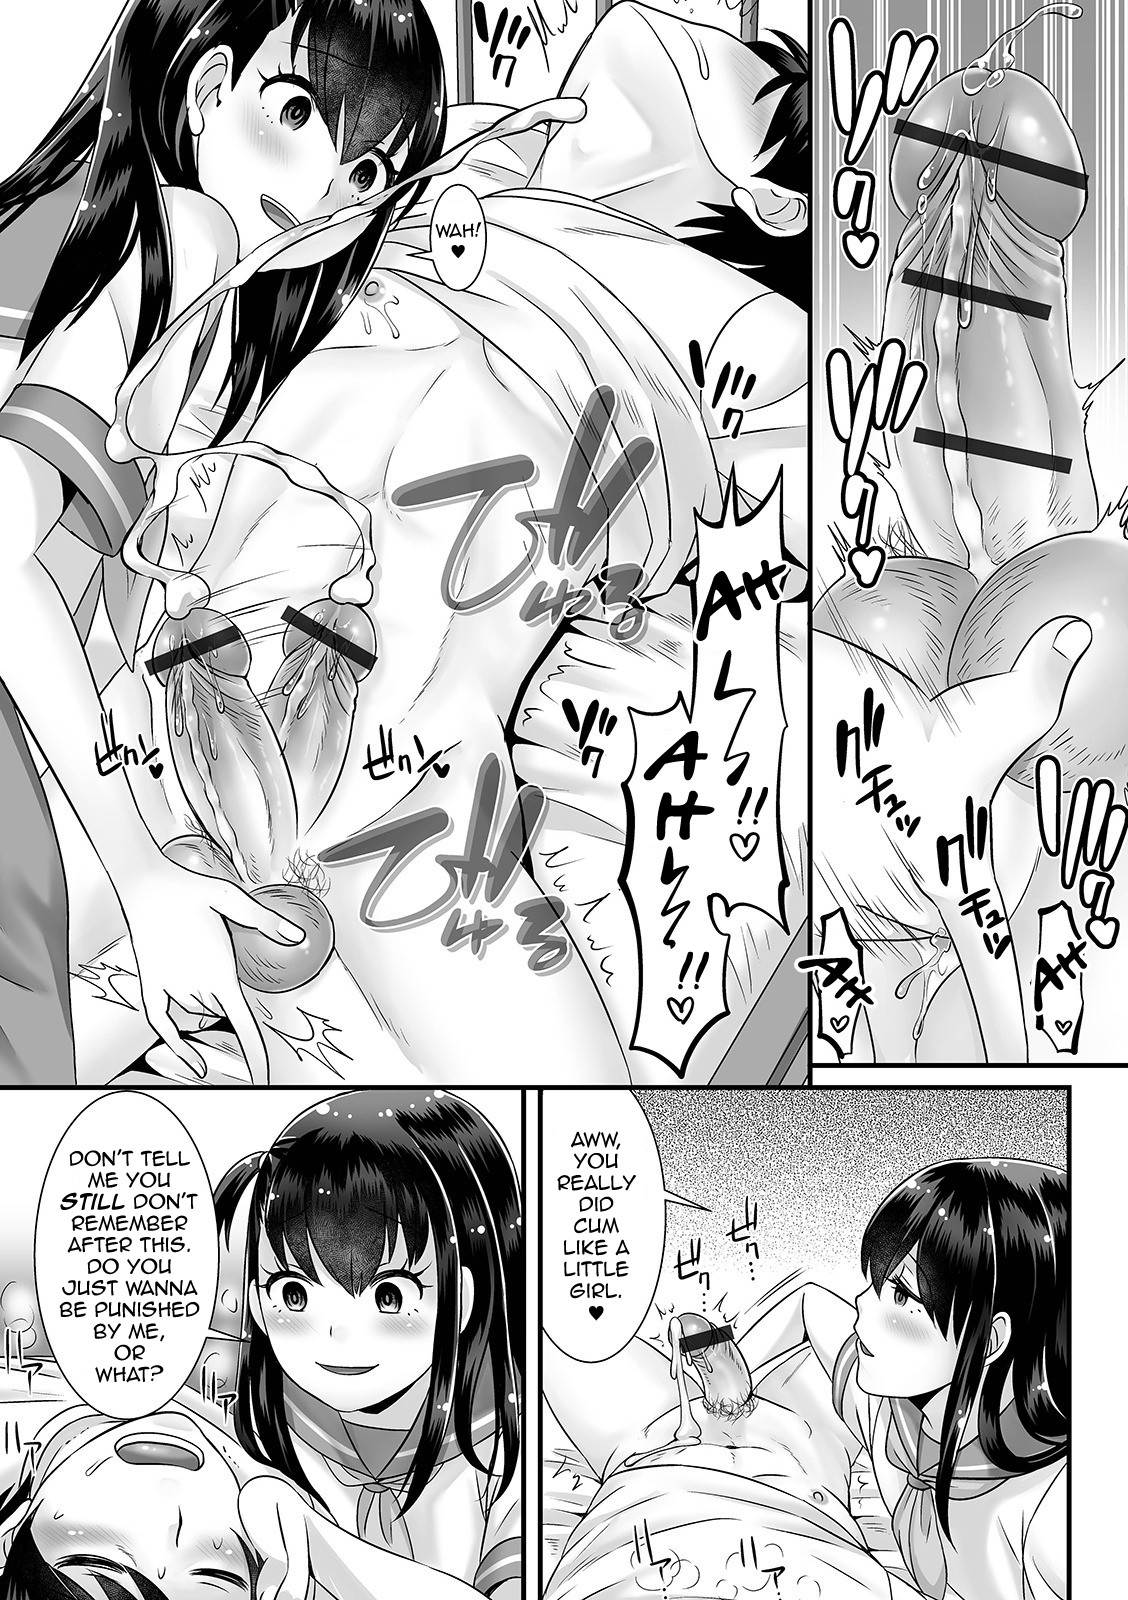 Yandere manga hentai